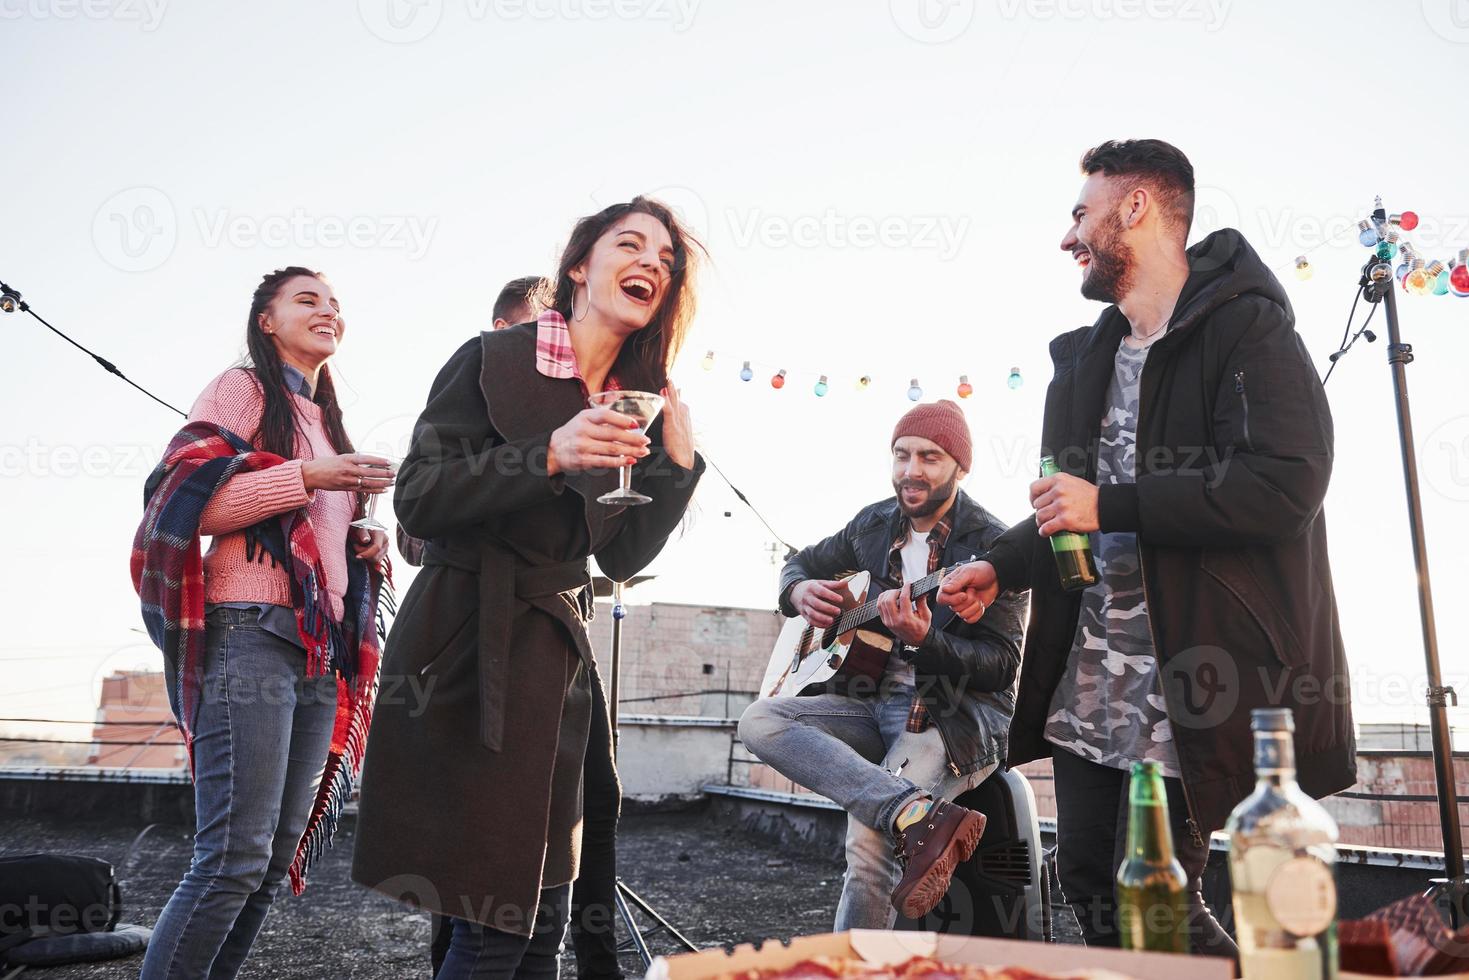 cara canta uma música engraçada. jovens alegres, sorrindo e bebendo no telhado. pizza e álcool na mesa. guitarrista foto